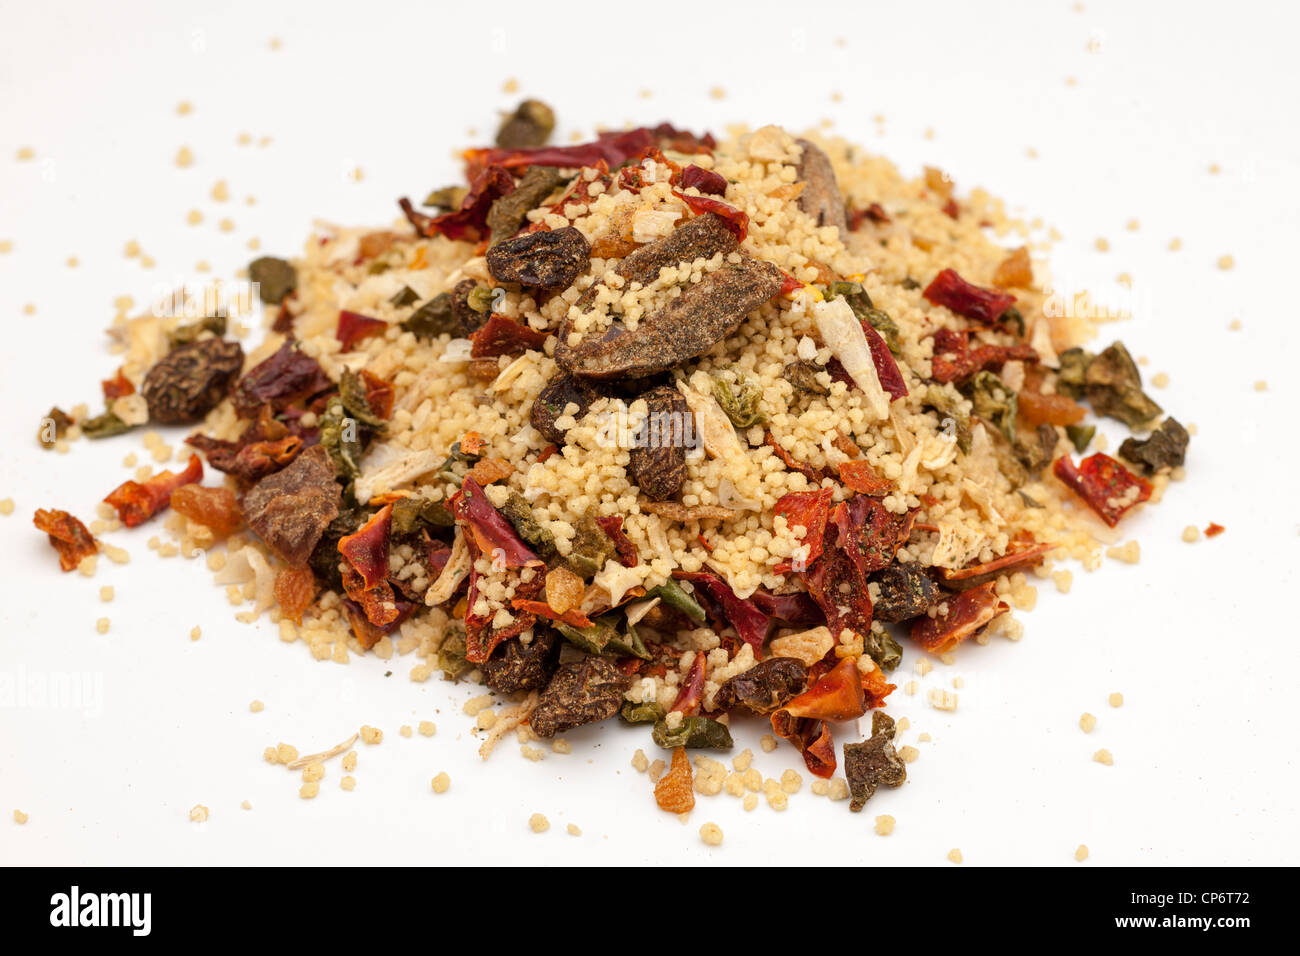 Pila di cuscus stile marocchino con frutta secca e spezie Foto Stock